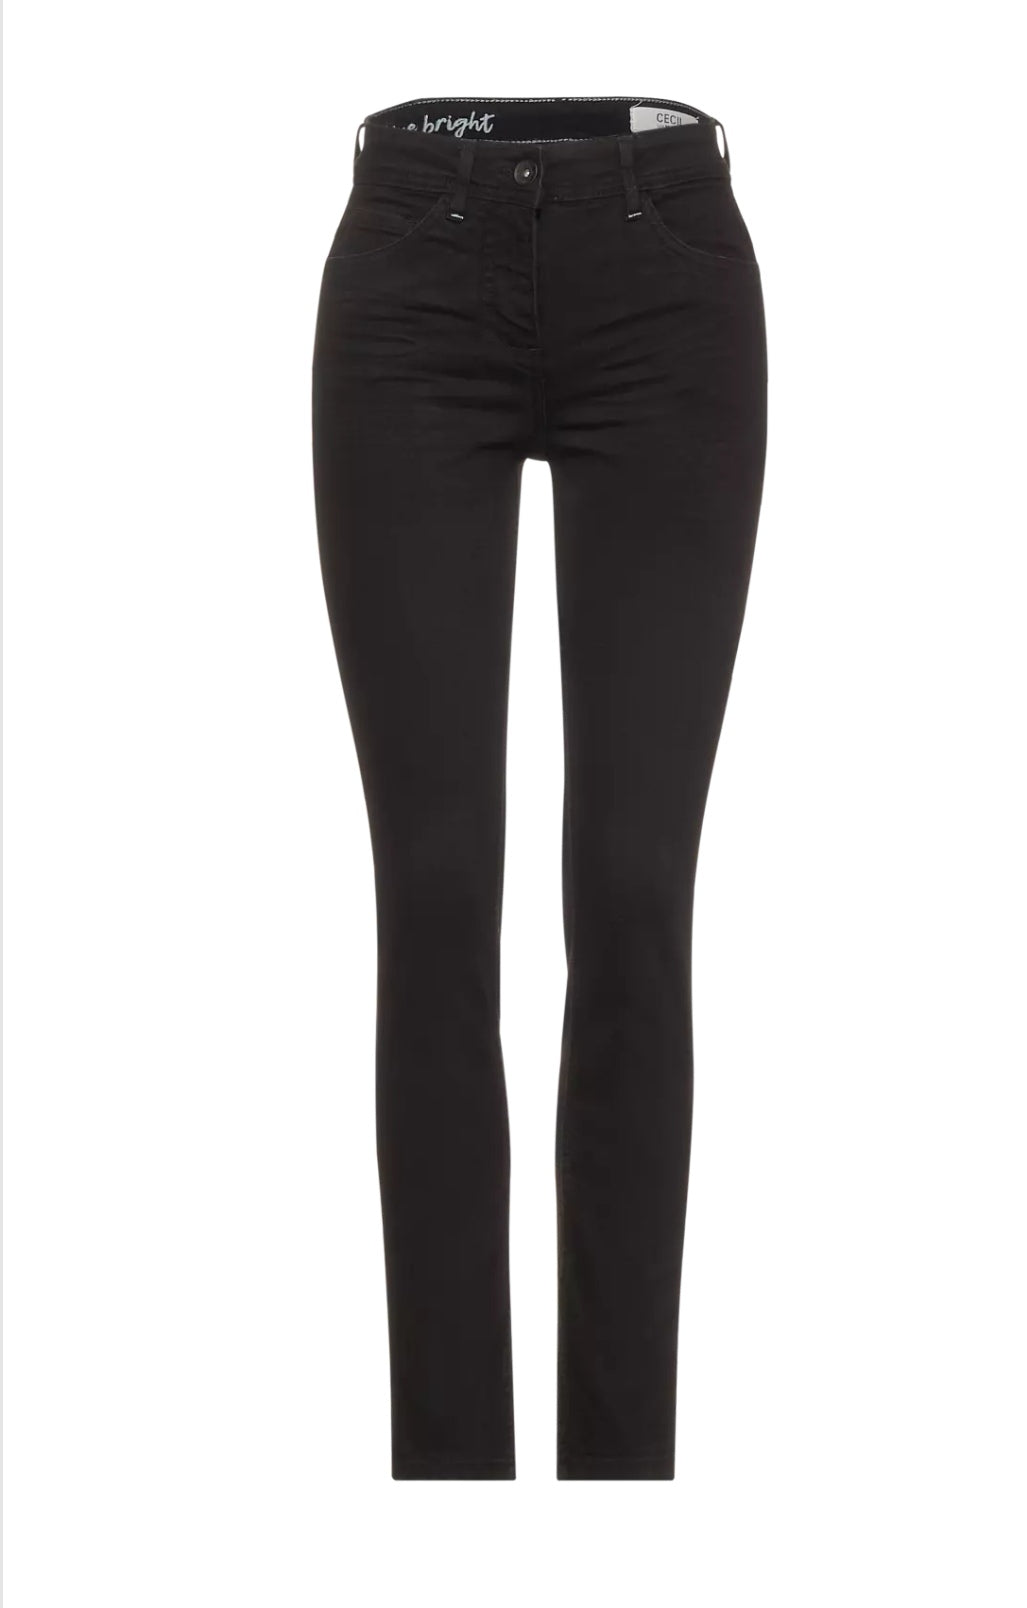 Black High Waist Jeans Long Leg373629